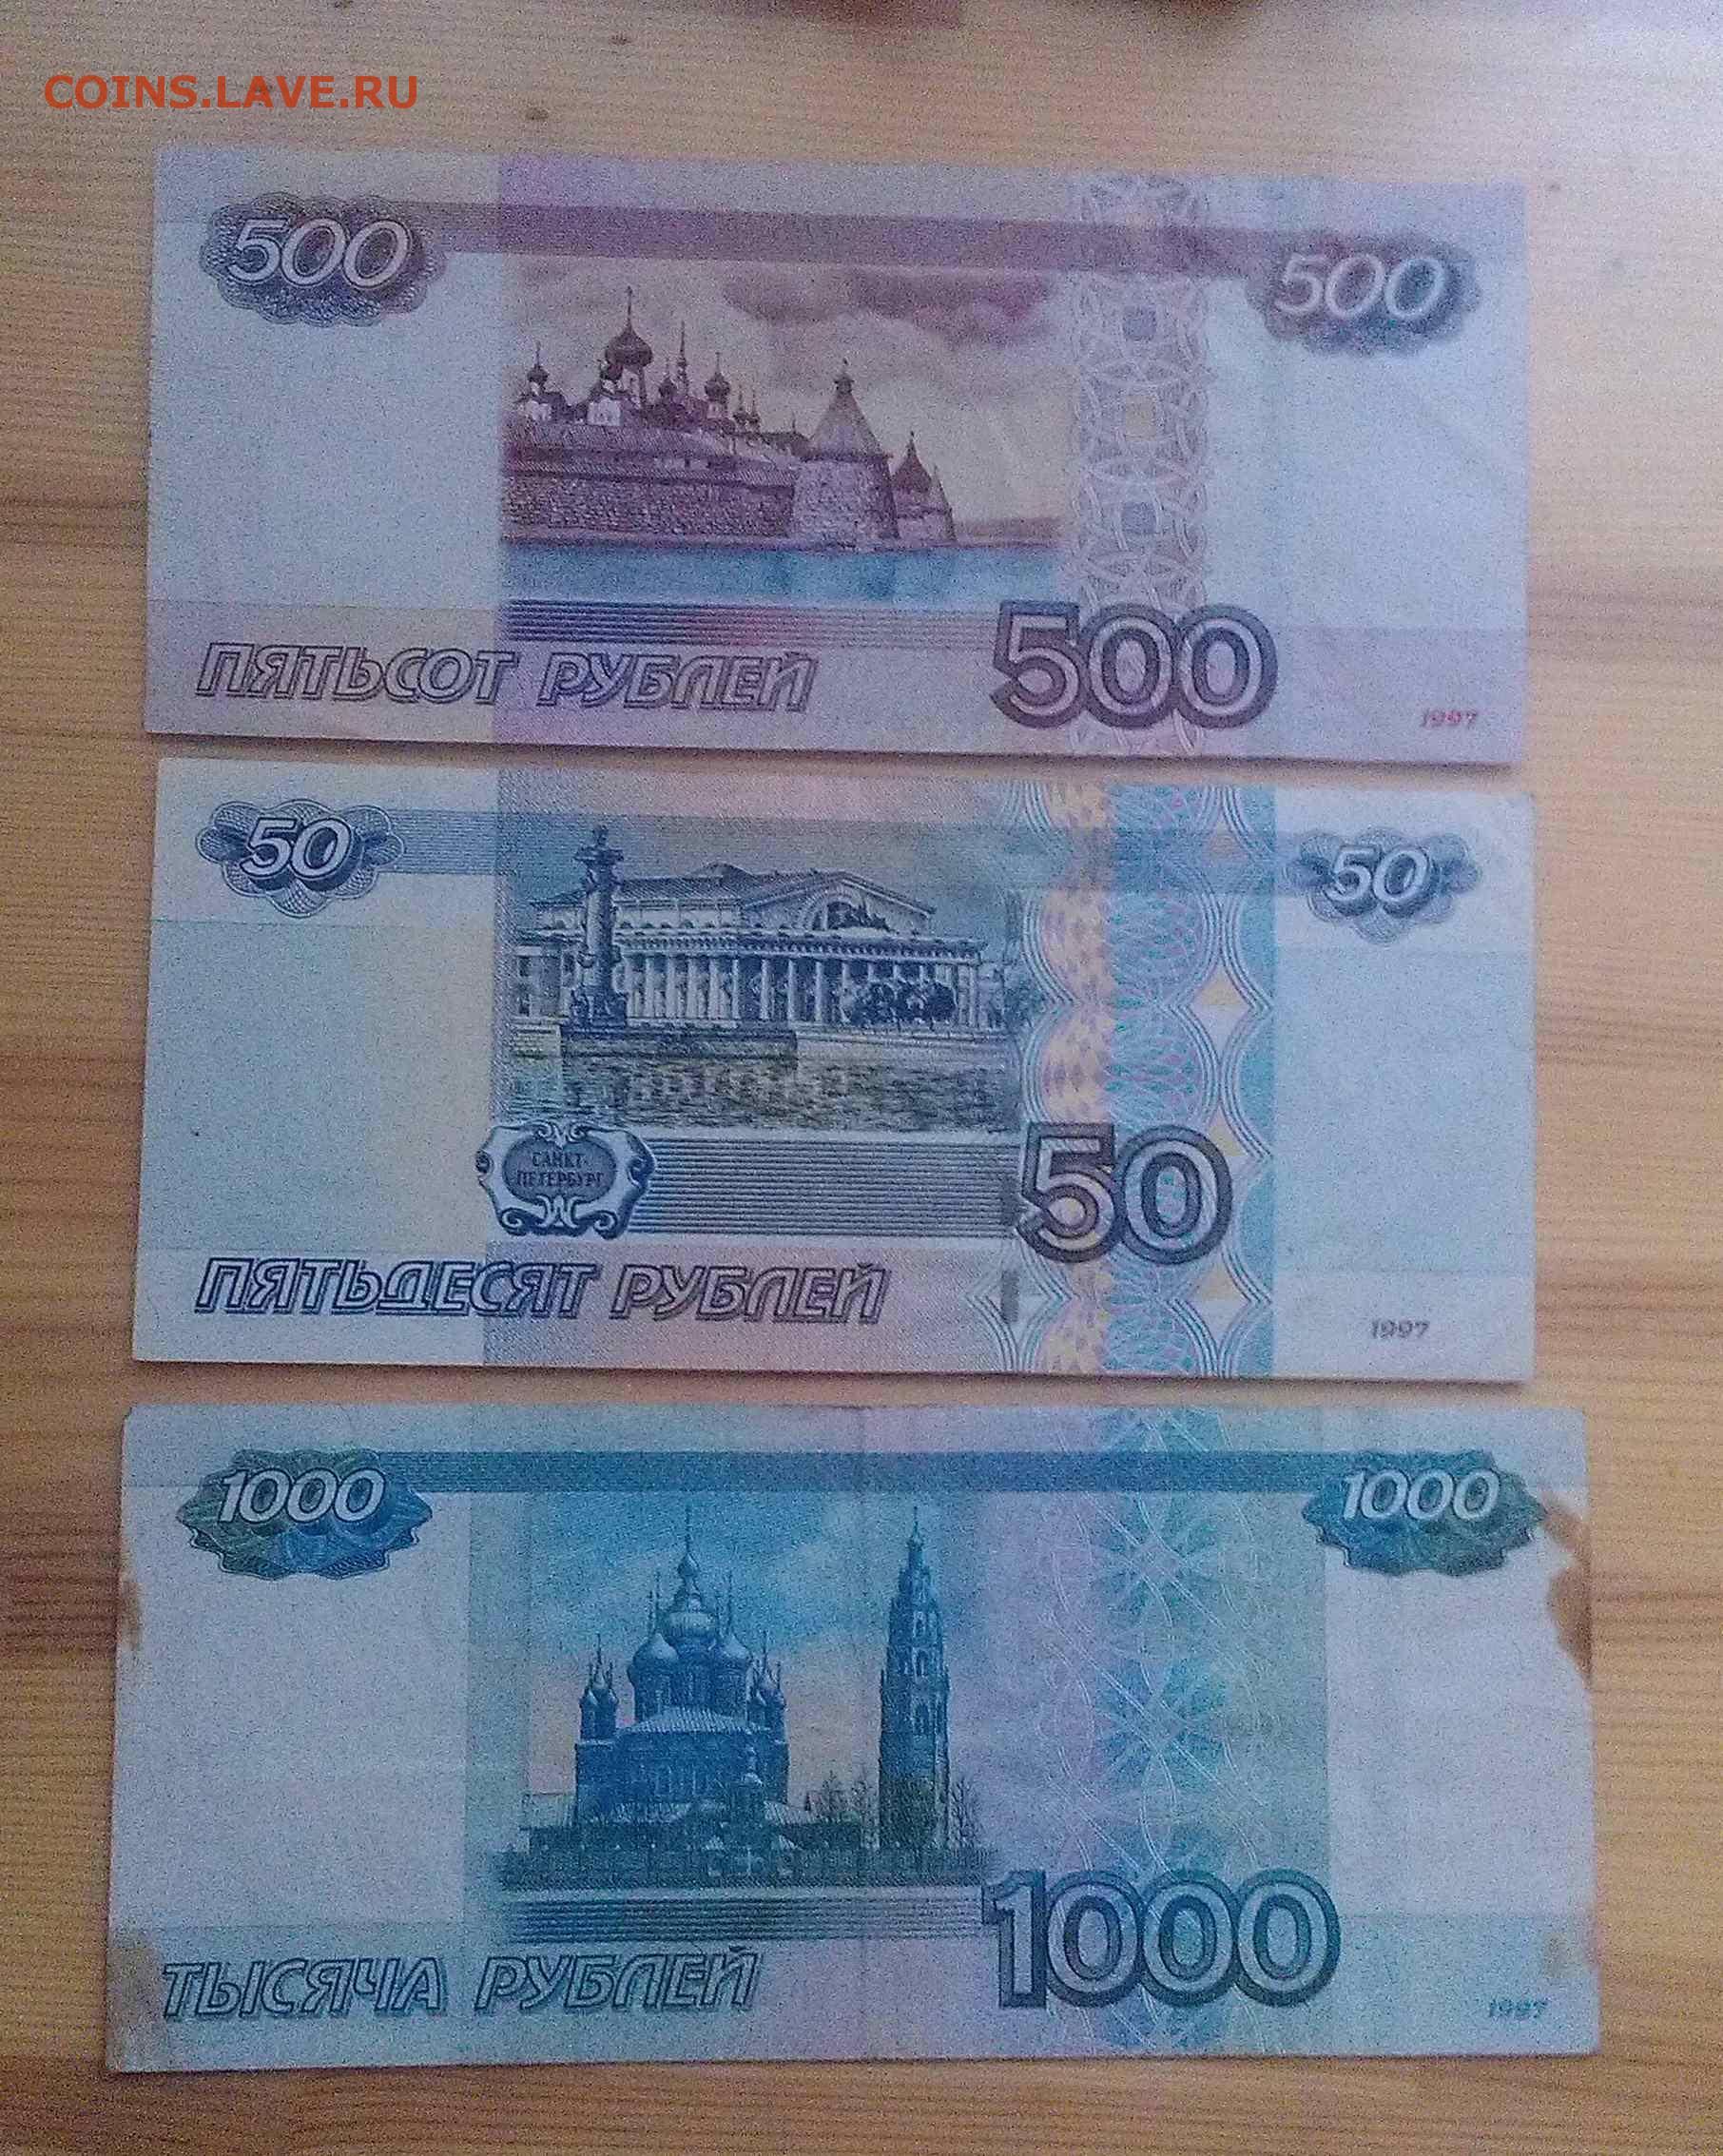 1000 рублей 2004. 50 Рублей и 1000 рублей. 500 И 1000 рублей. 500 Рублей и 50 рублей. 50 И 500 рублей.